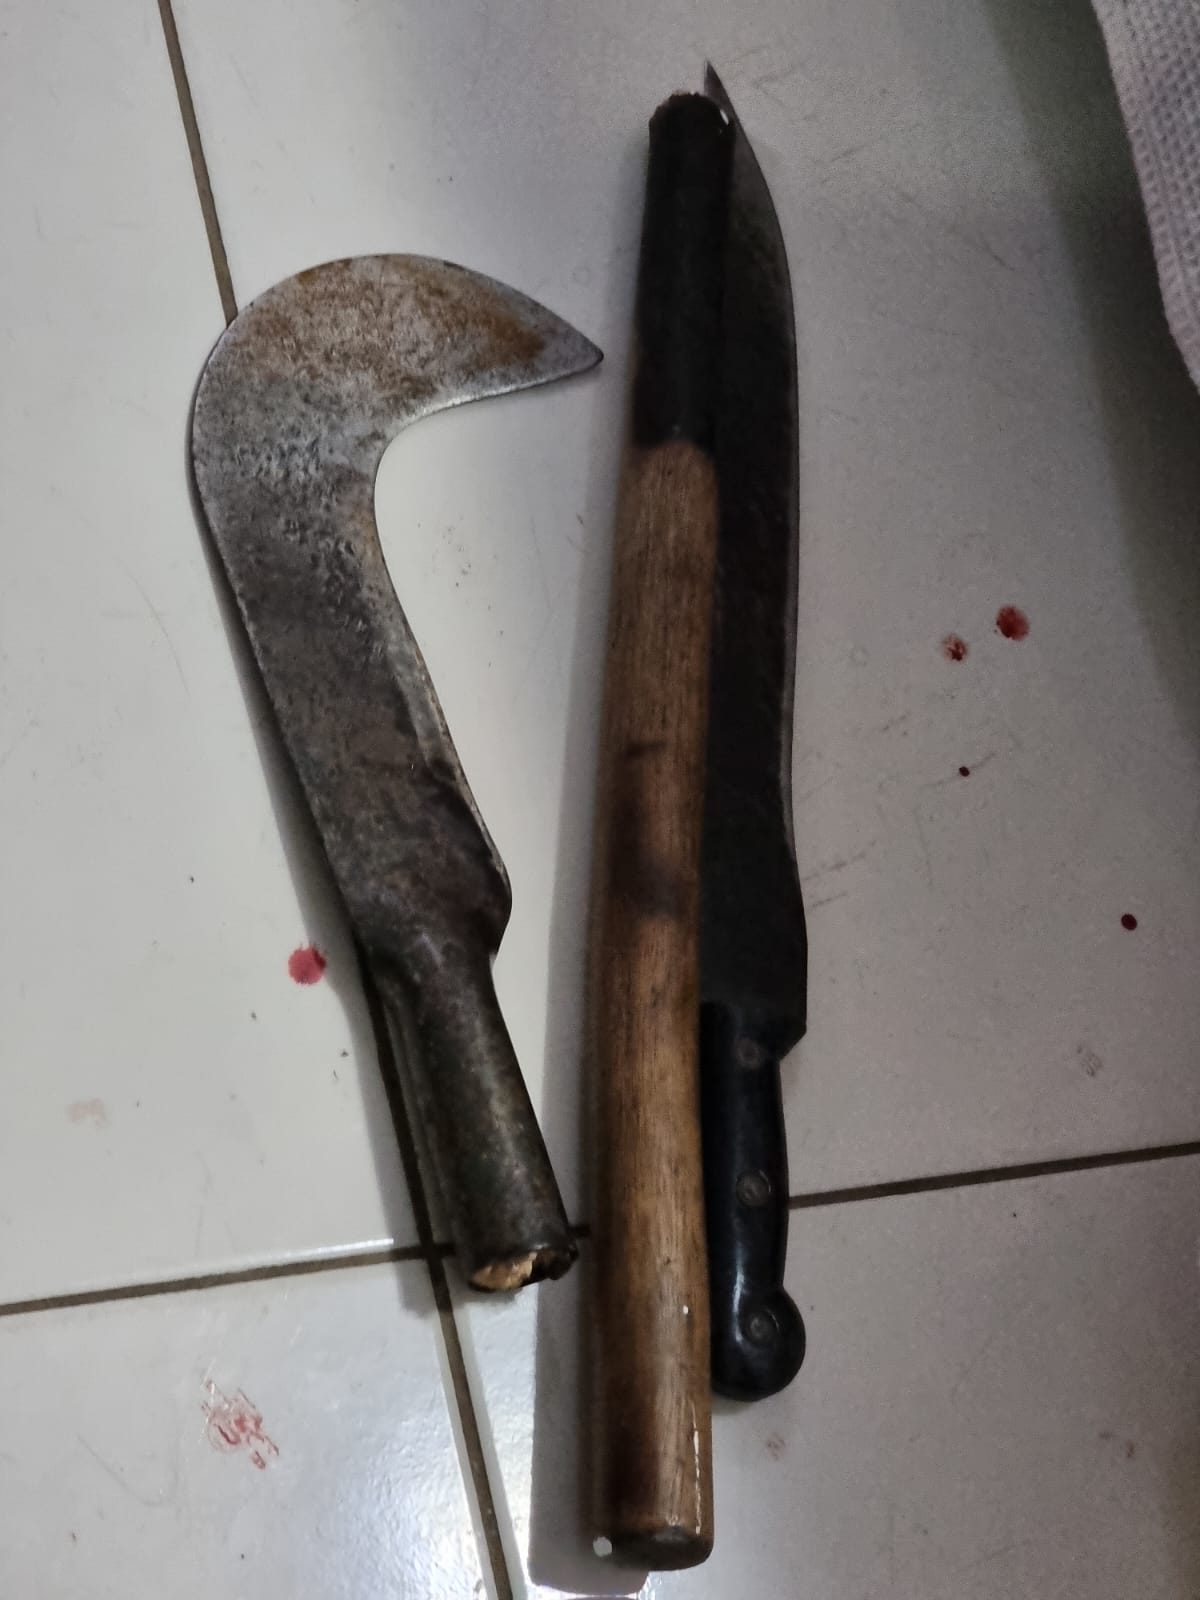 Foice e facão utilizados no crime pelo preso (Foto: Imagem cedida ao Meionorte)